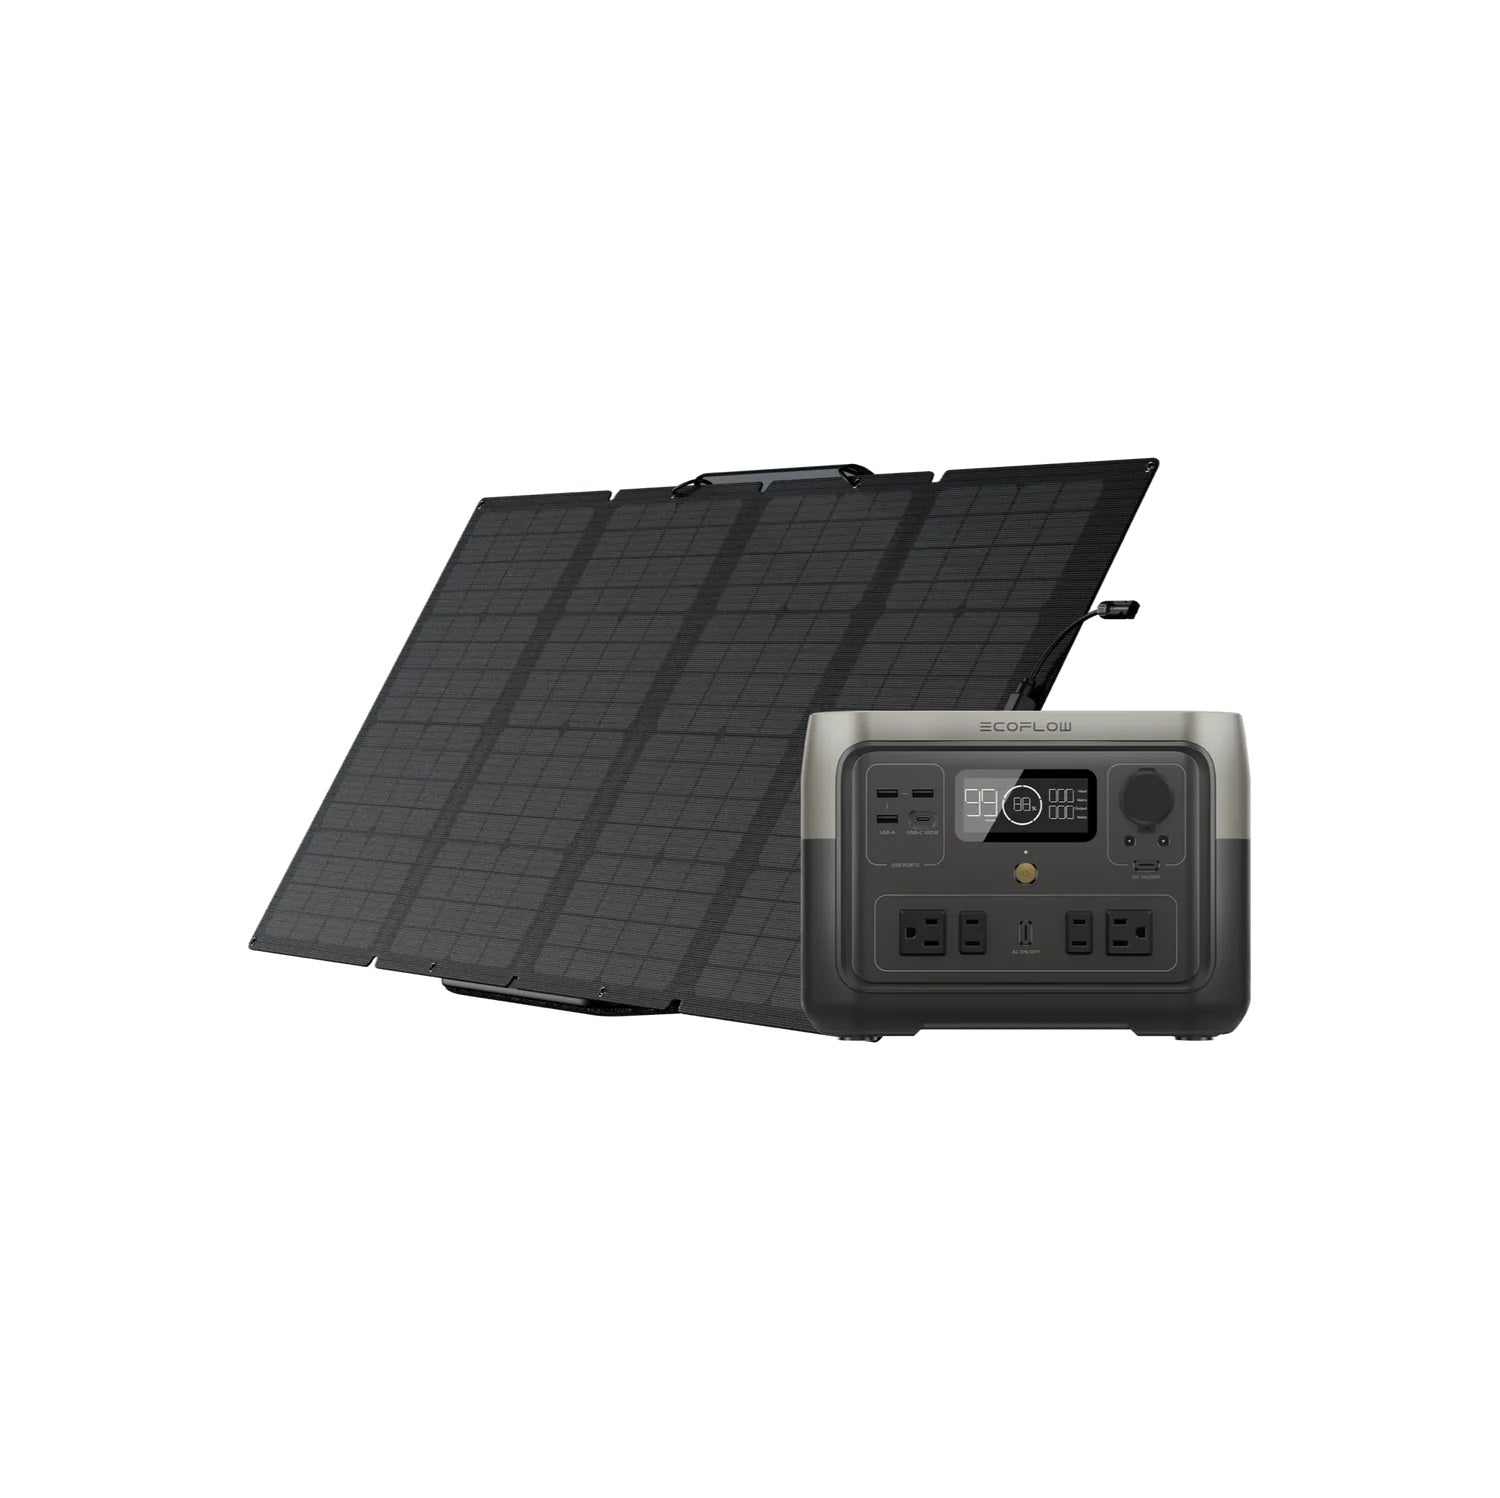 Ecoflow River 2 Max 160W Portable Solar Panel Bundle